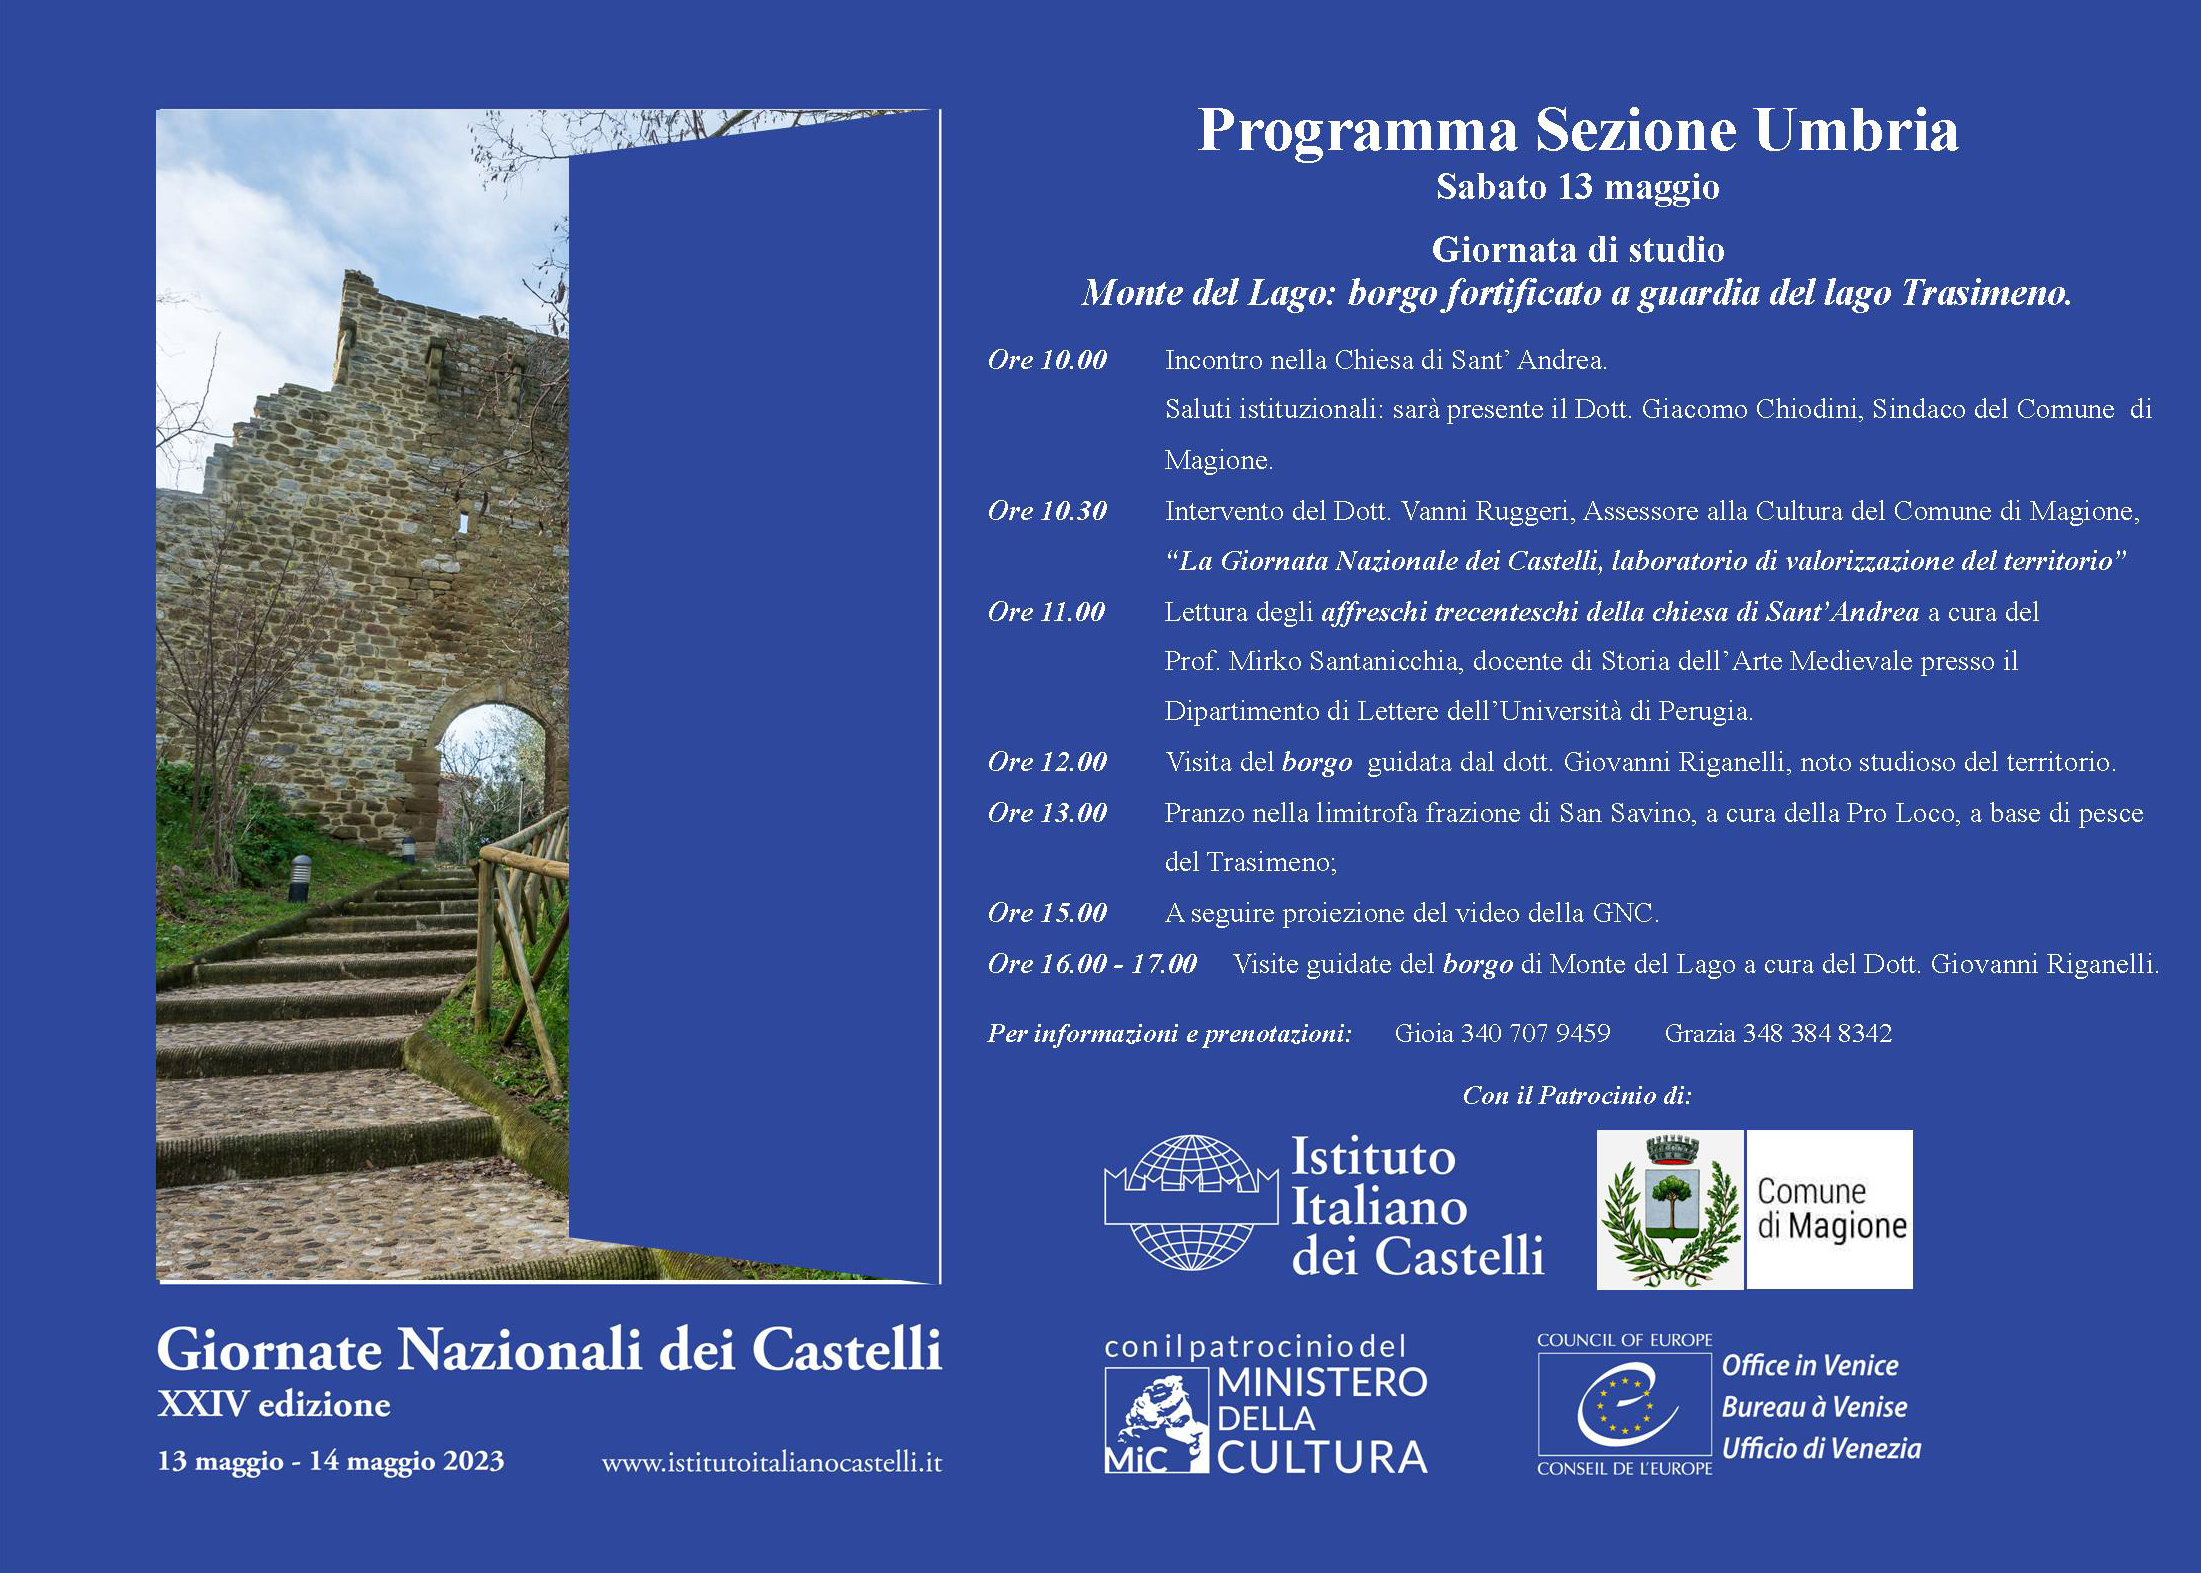 Giornata Nazionale dei Castelli 2023 – Umbria